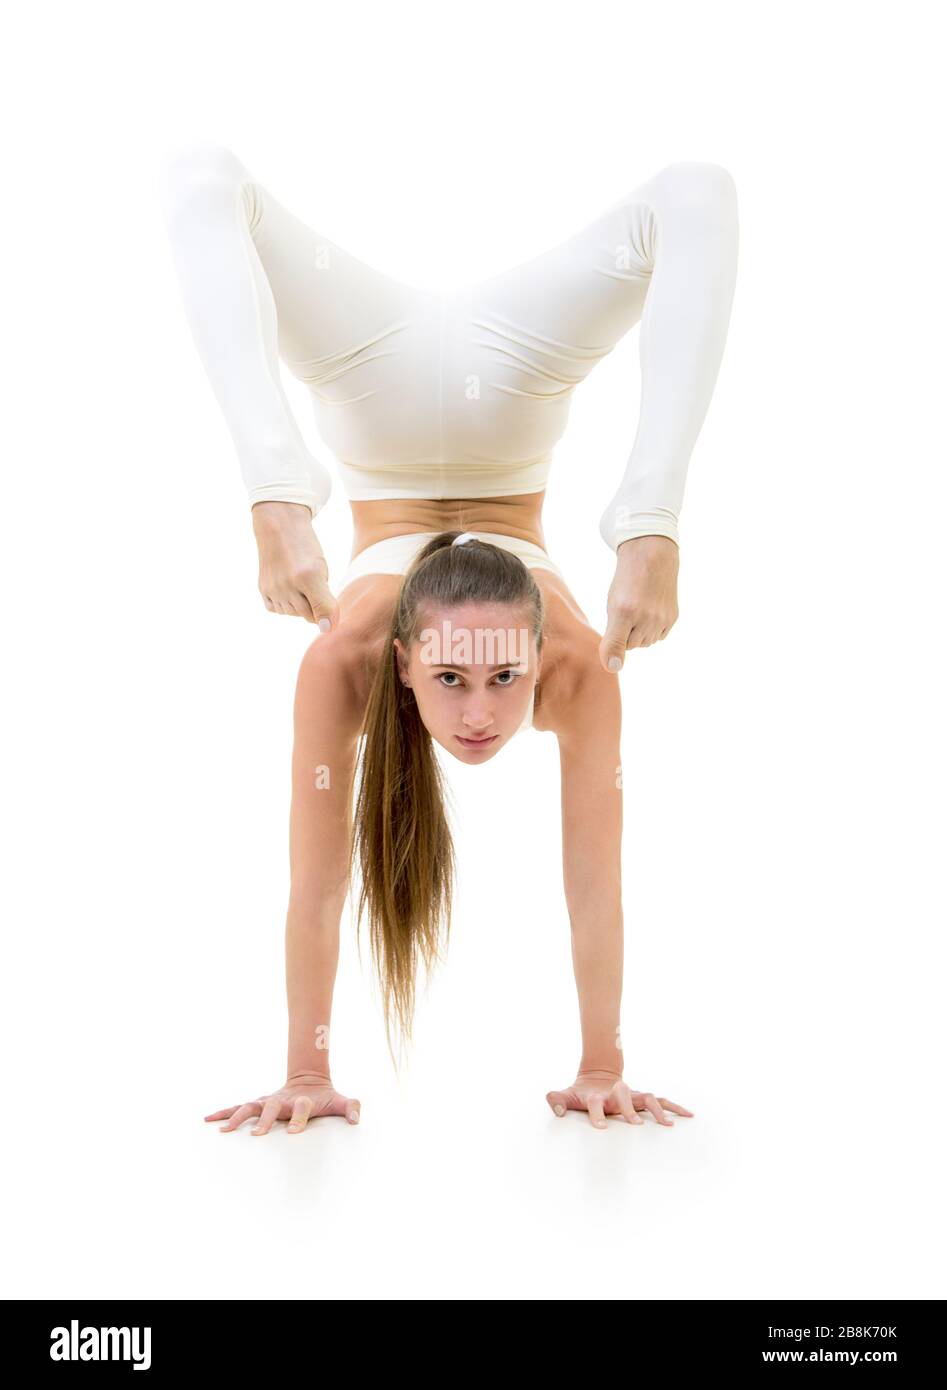 Una giovane donna in tuta bianca esegue elementi acrobatici e yoga. Studio girato su sfondo bianco. Immagine isolata. Foto Stock